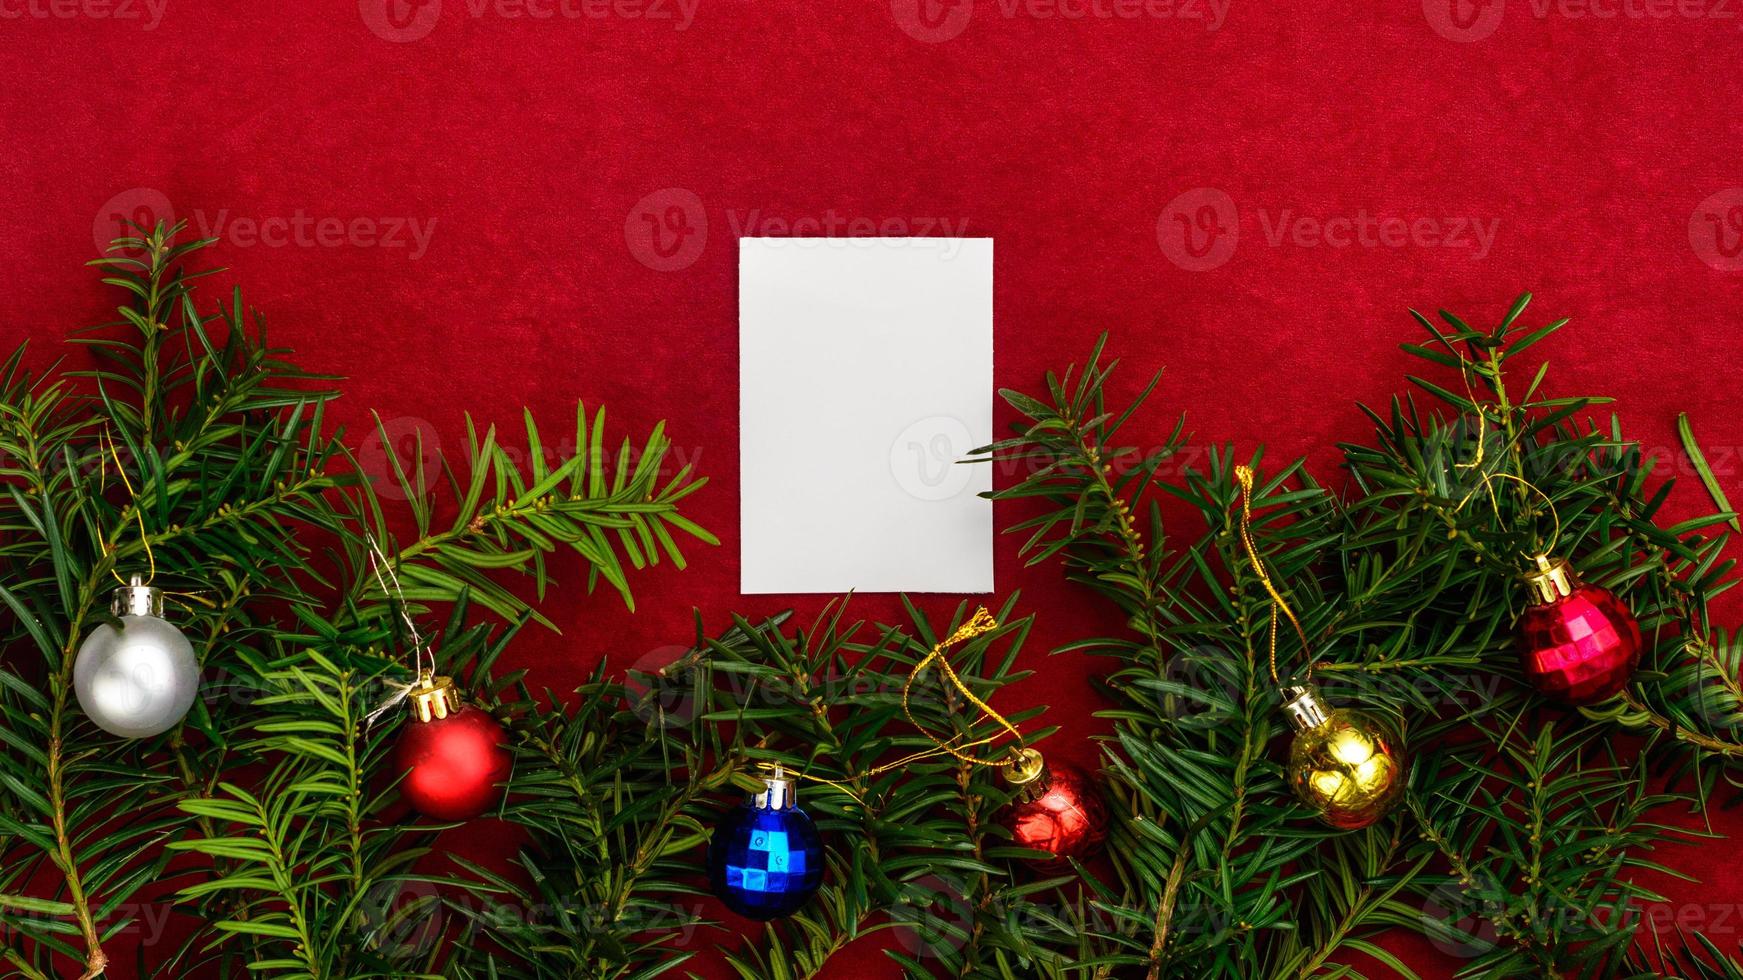 trozo de papel para deseos de navidad sobre un fondo rojo con ramas de árbol de navidad y bolas de navidad. foto